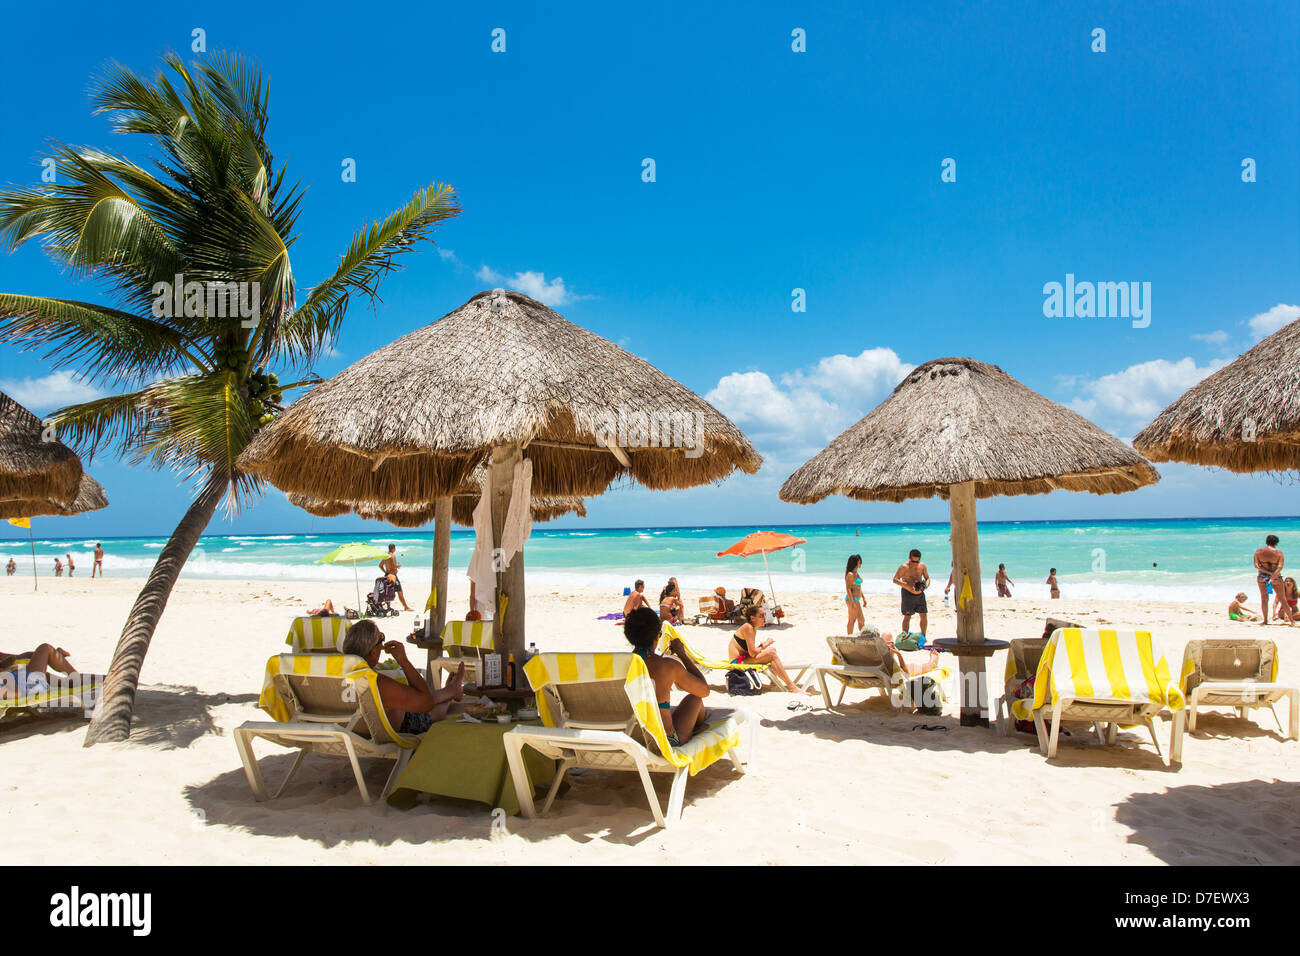 Messico, Playa del Carmen persone presso una spiaggia con palme e palapas Foto Stock